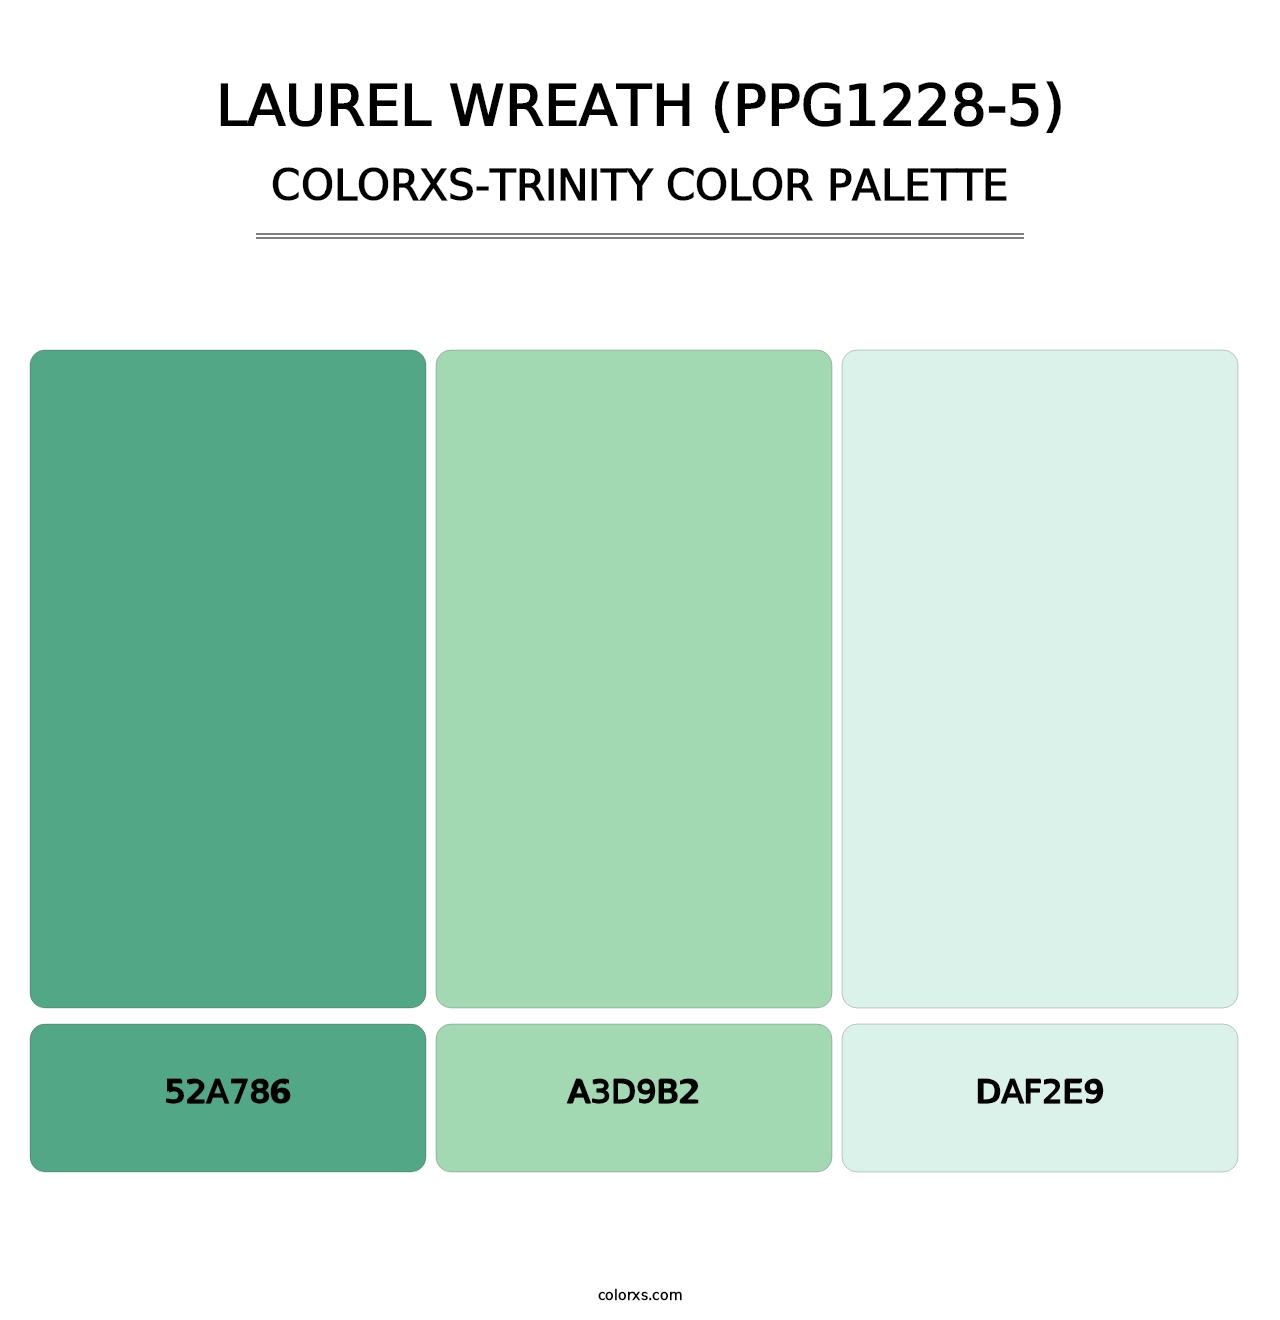 Laurel Wreath (PPG1228-5) - Colorxs Trinity Palette